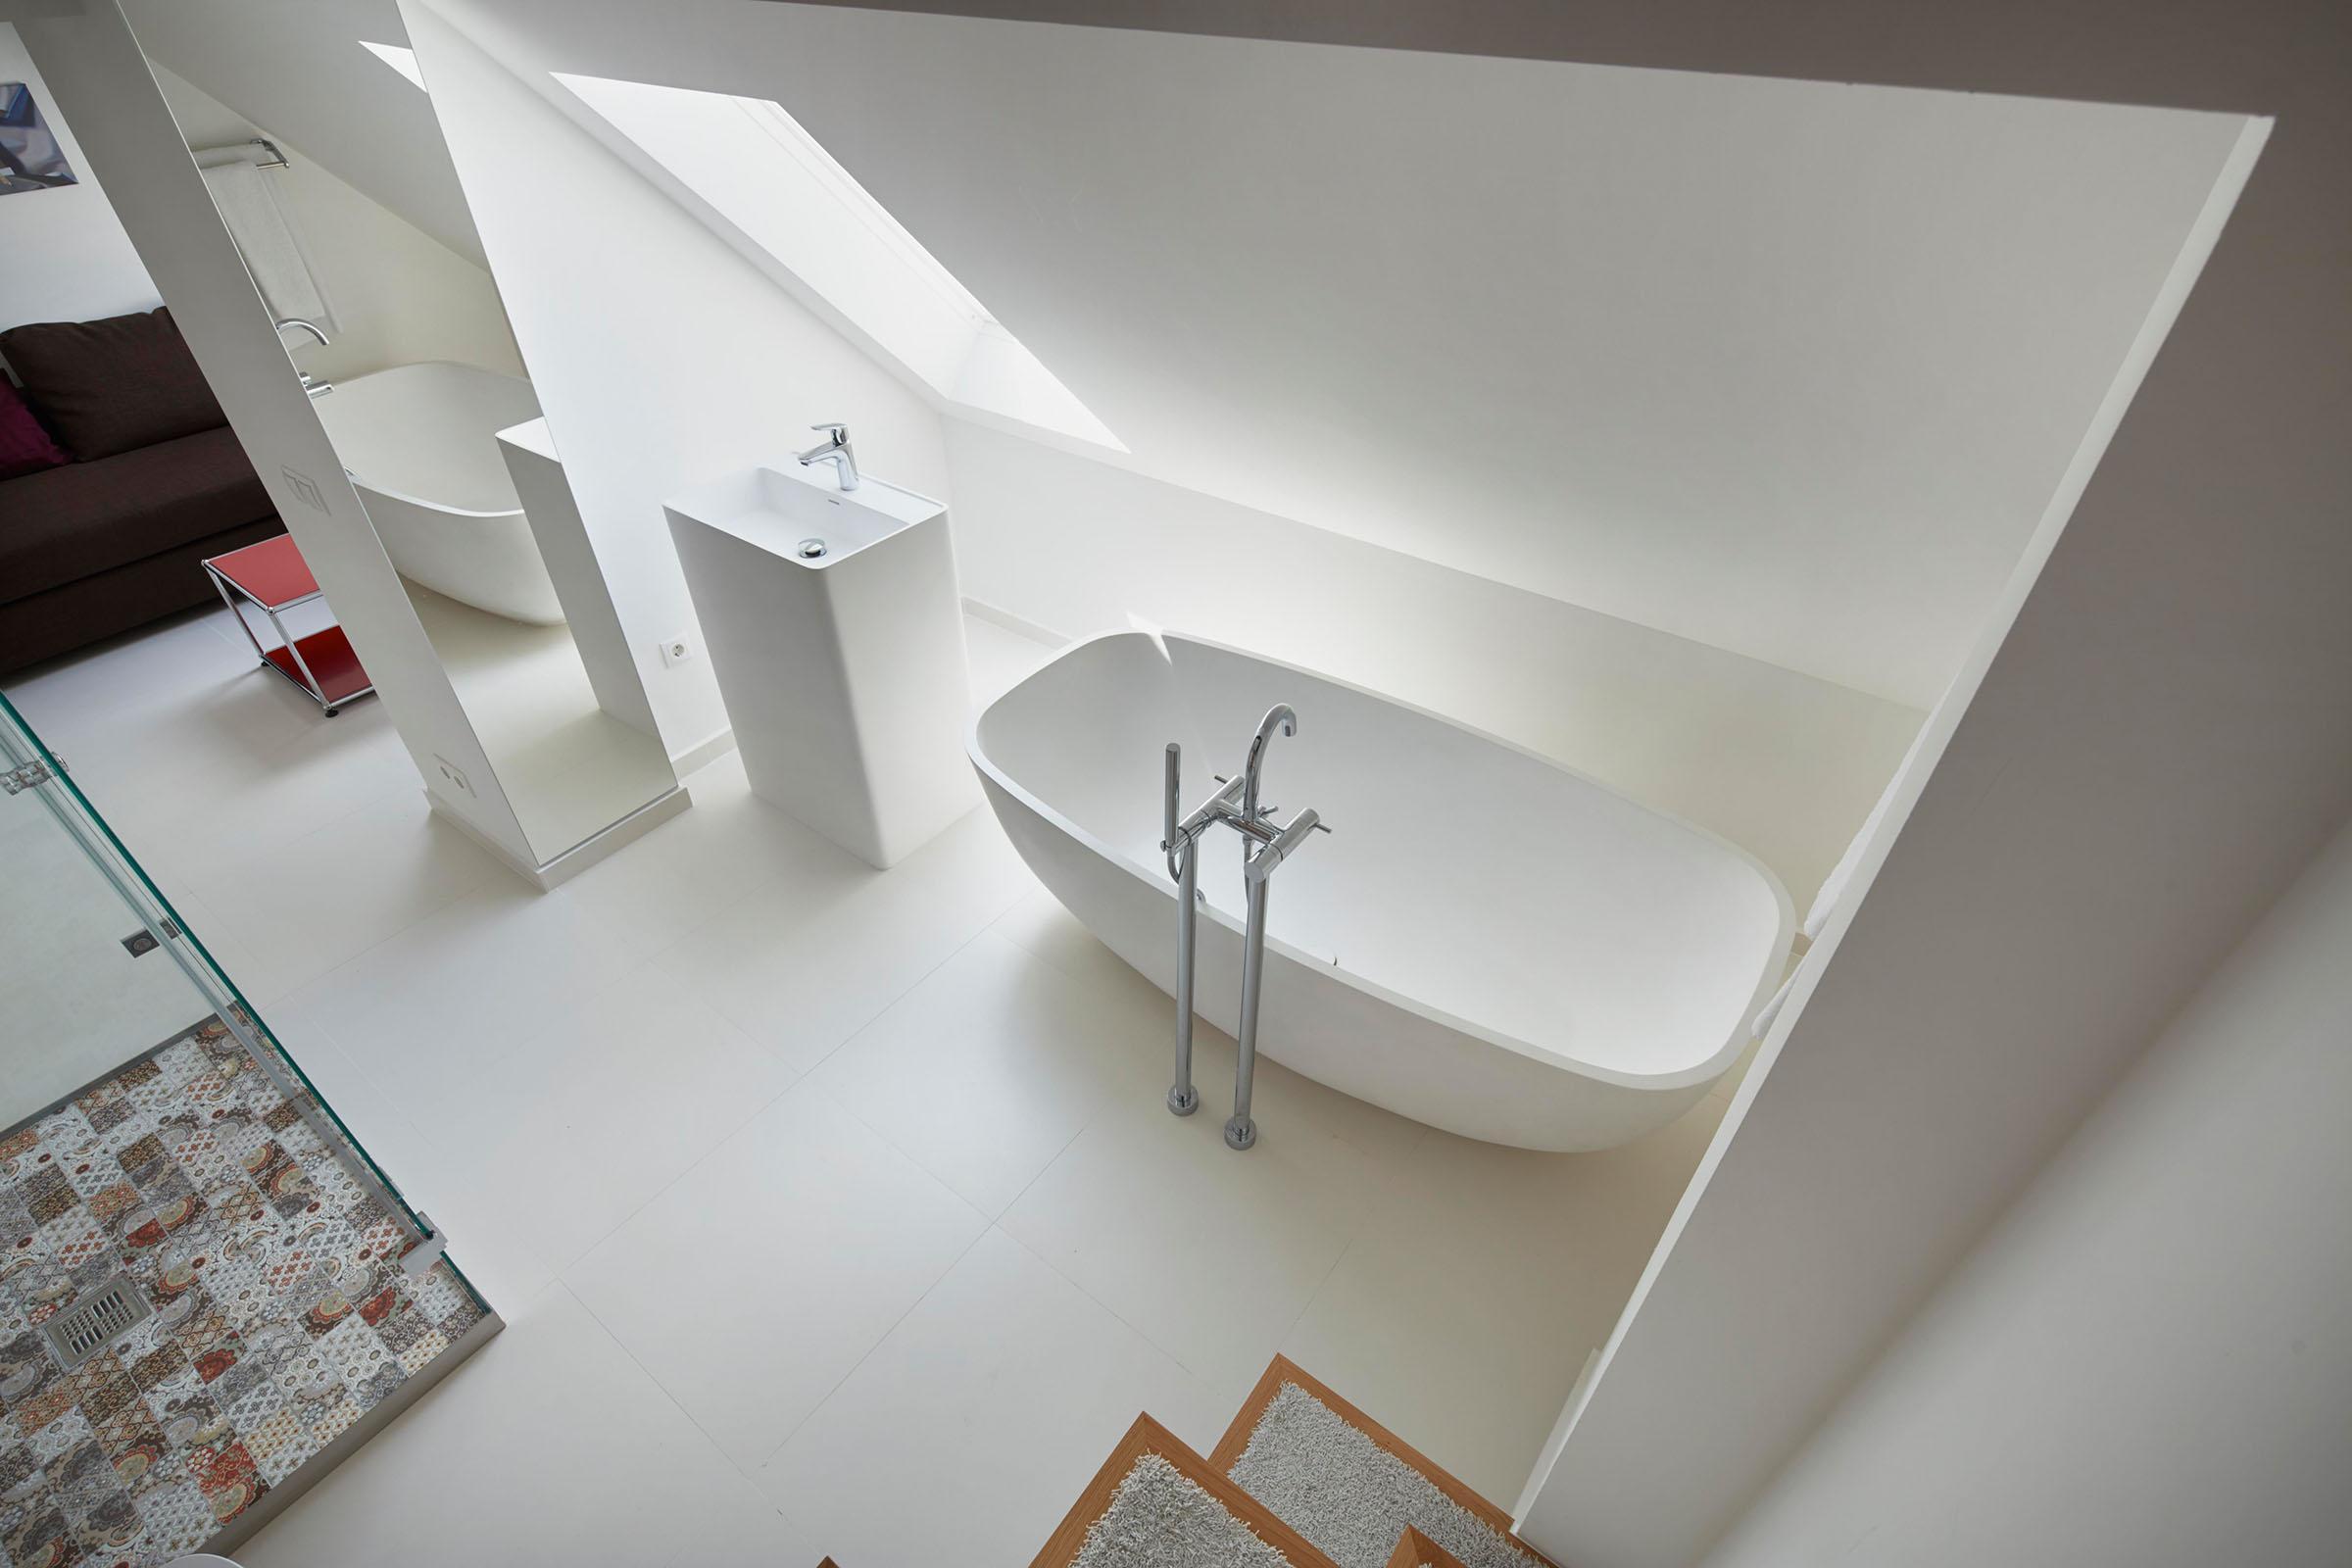 Stilvoll eingerichtetes, modernes und reduziertes Badezimmer in einem Hotel - Zeitgemäßes Interior Design für entspannten Komfort - GROSSMANN INTERIORS